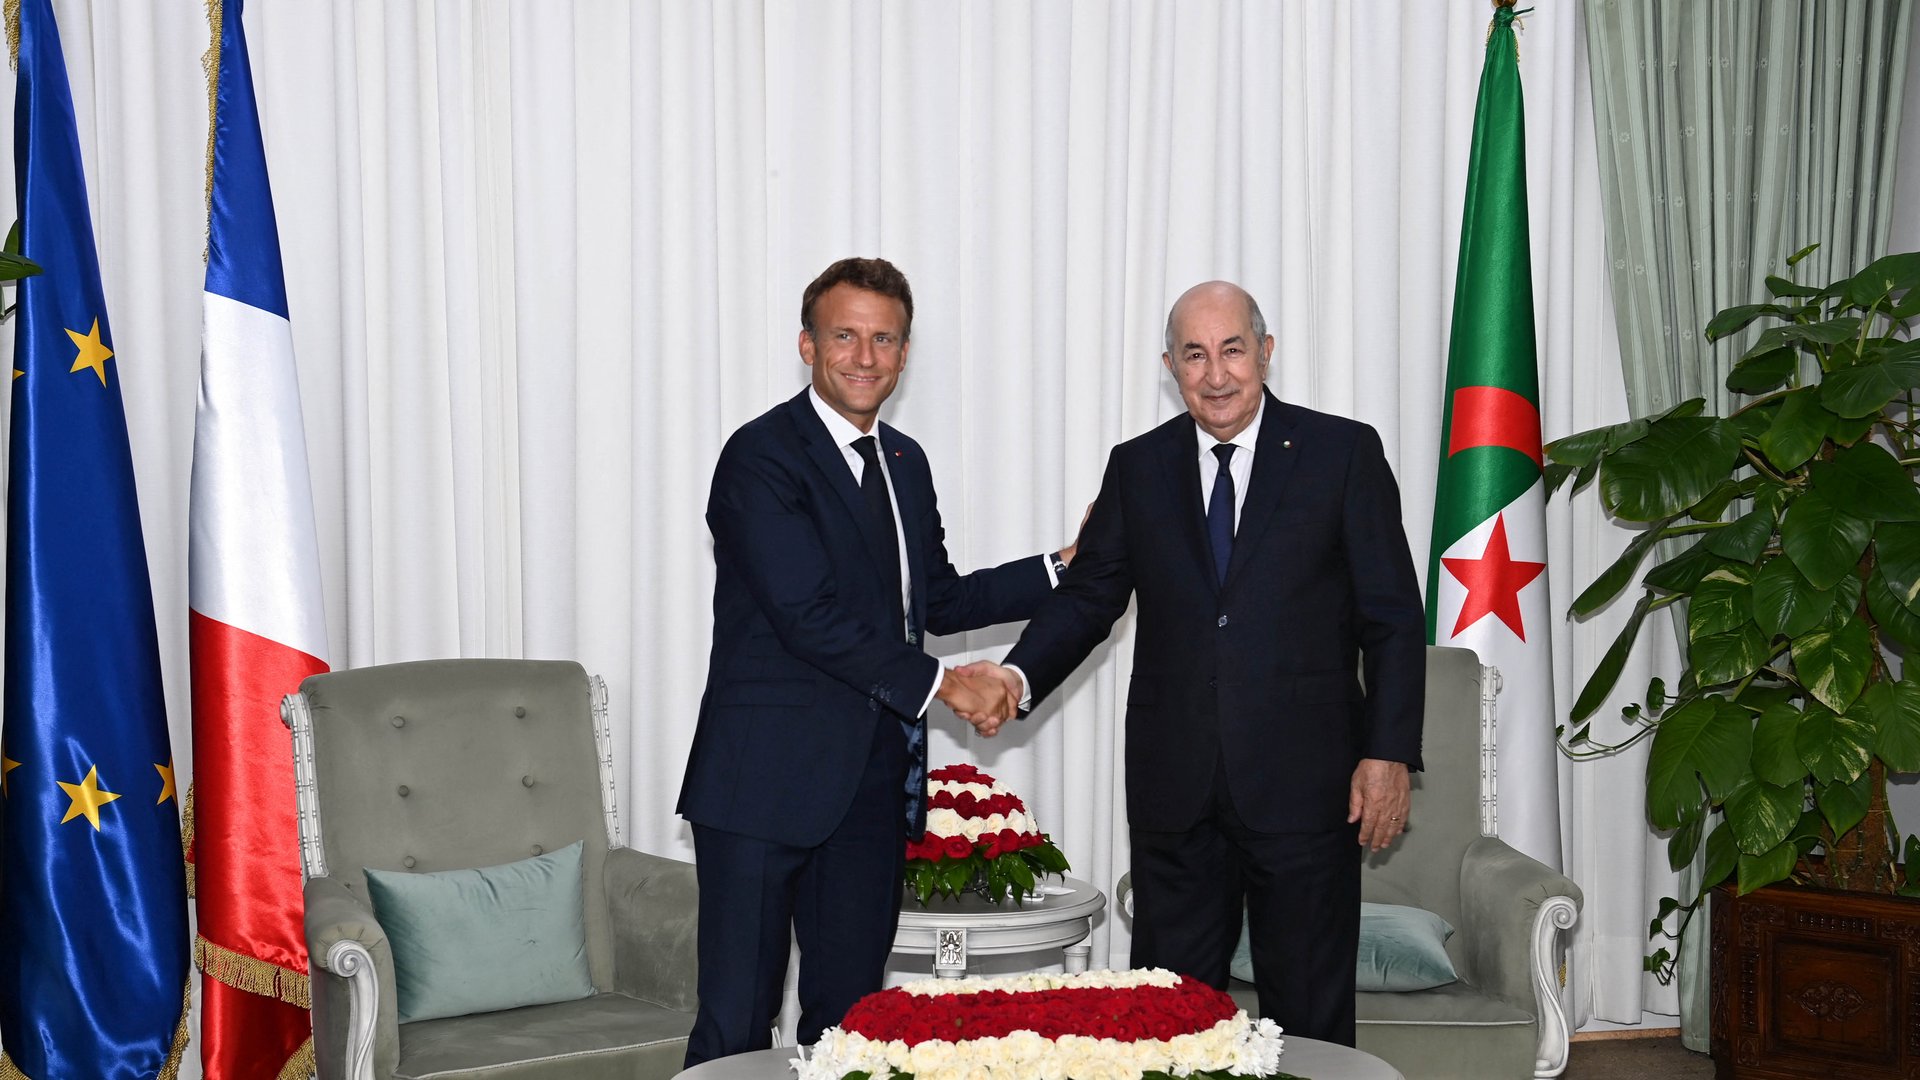 الجزائر وفرنسا توقعان اتفاقية لاستعادة ممتلكات “لا تقدر بثمن”